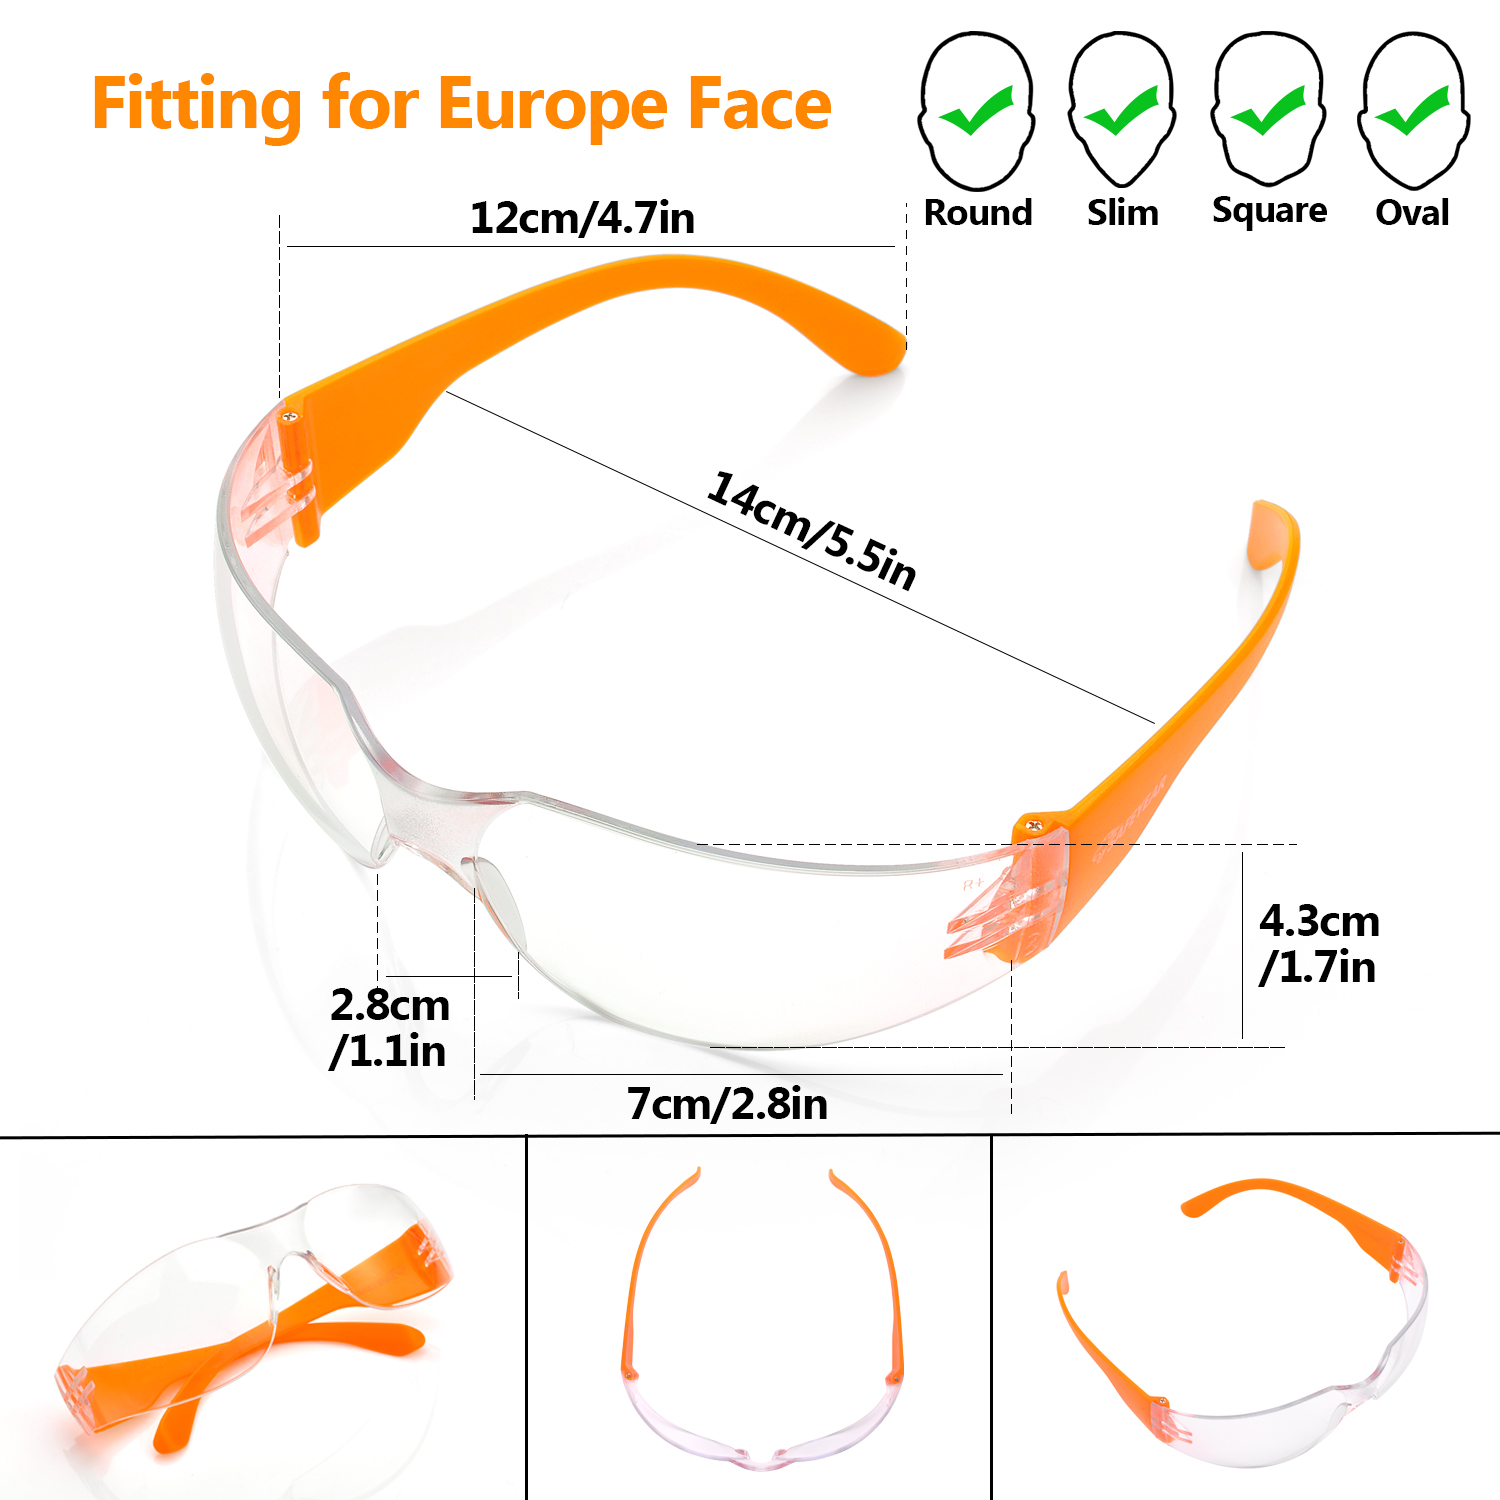 Occhiali protettivi per la protezione degli occhi SG001 Arancio